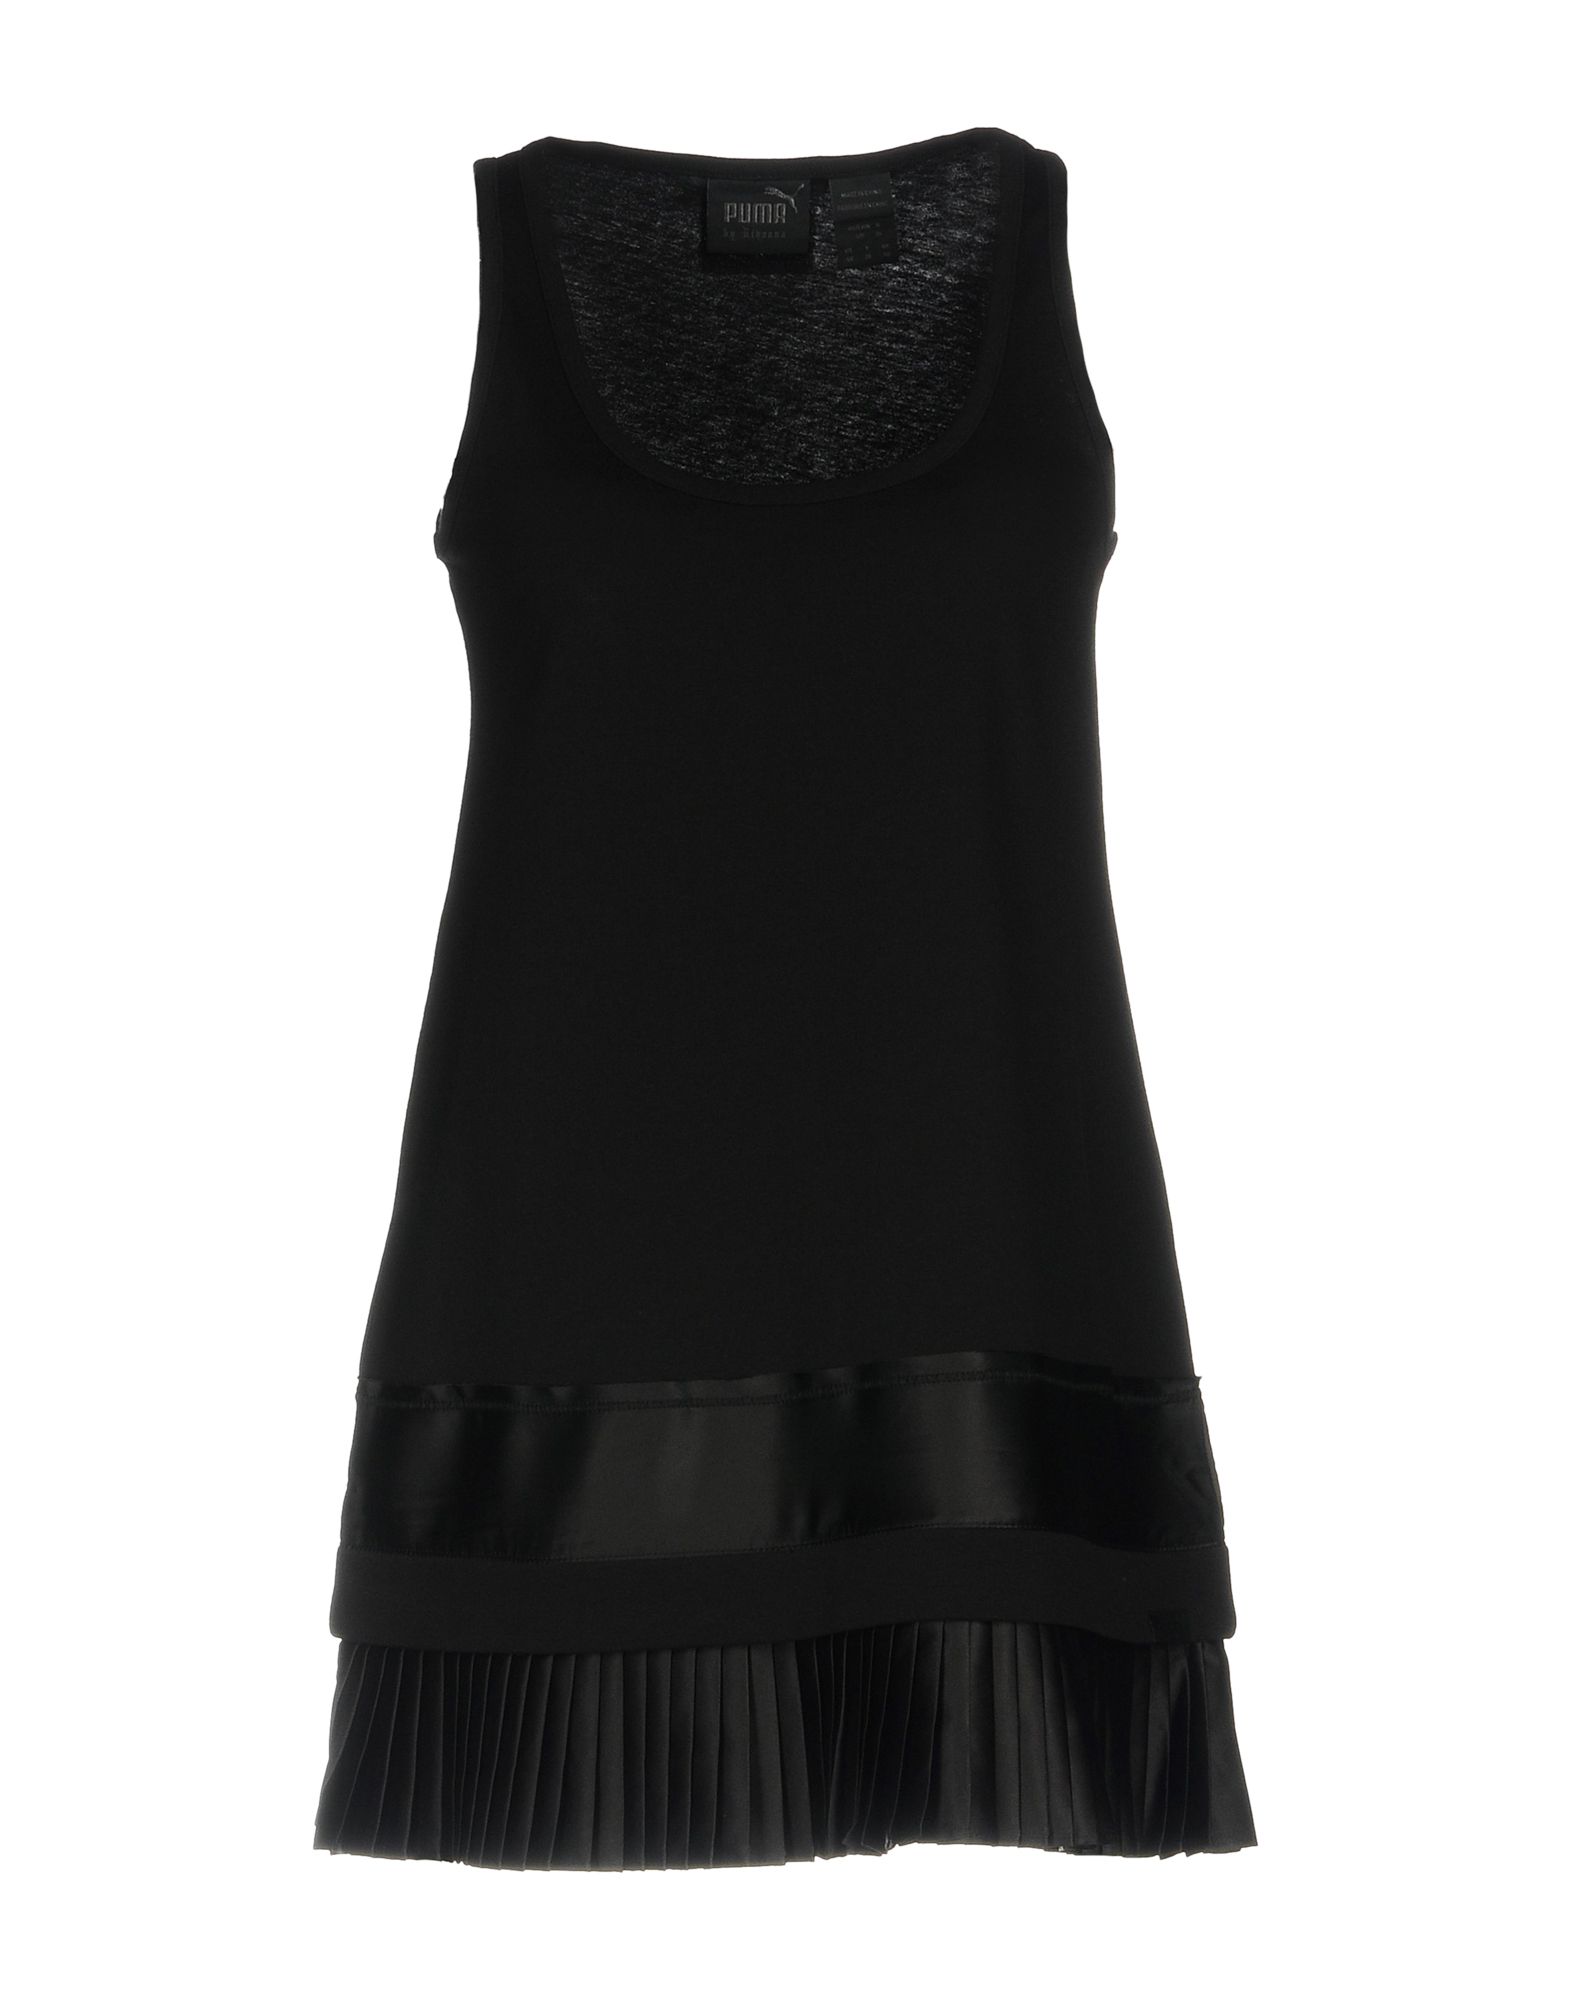 《送料無料》FENTY PUMA by RIHANNA レディース ミニワンピース＆ドレス ブラック 8 コットン 100% PLEATED HEM JERSEY DRESS